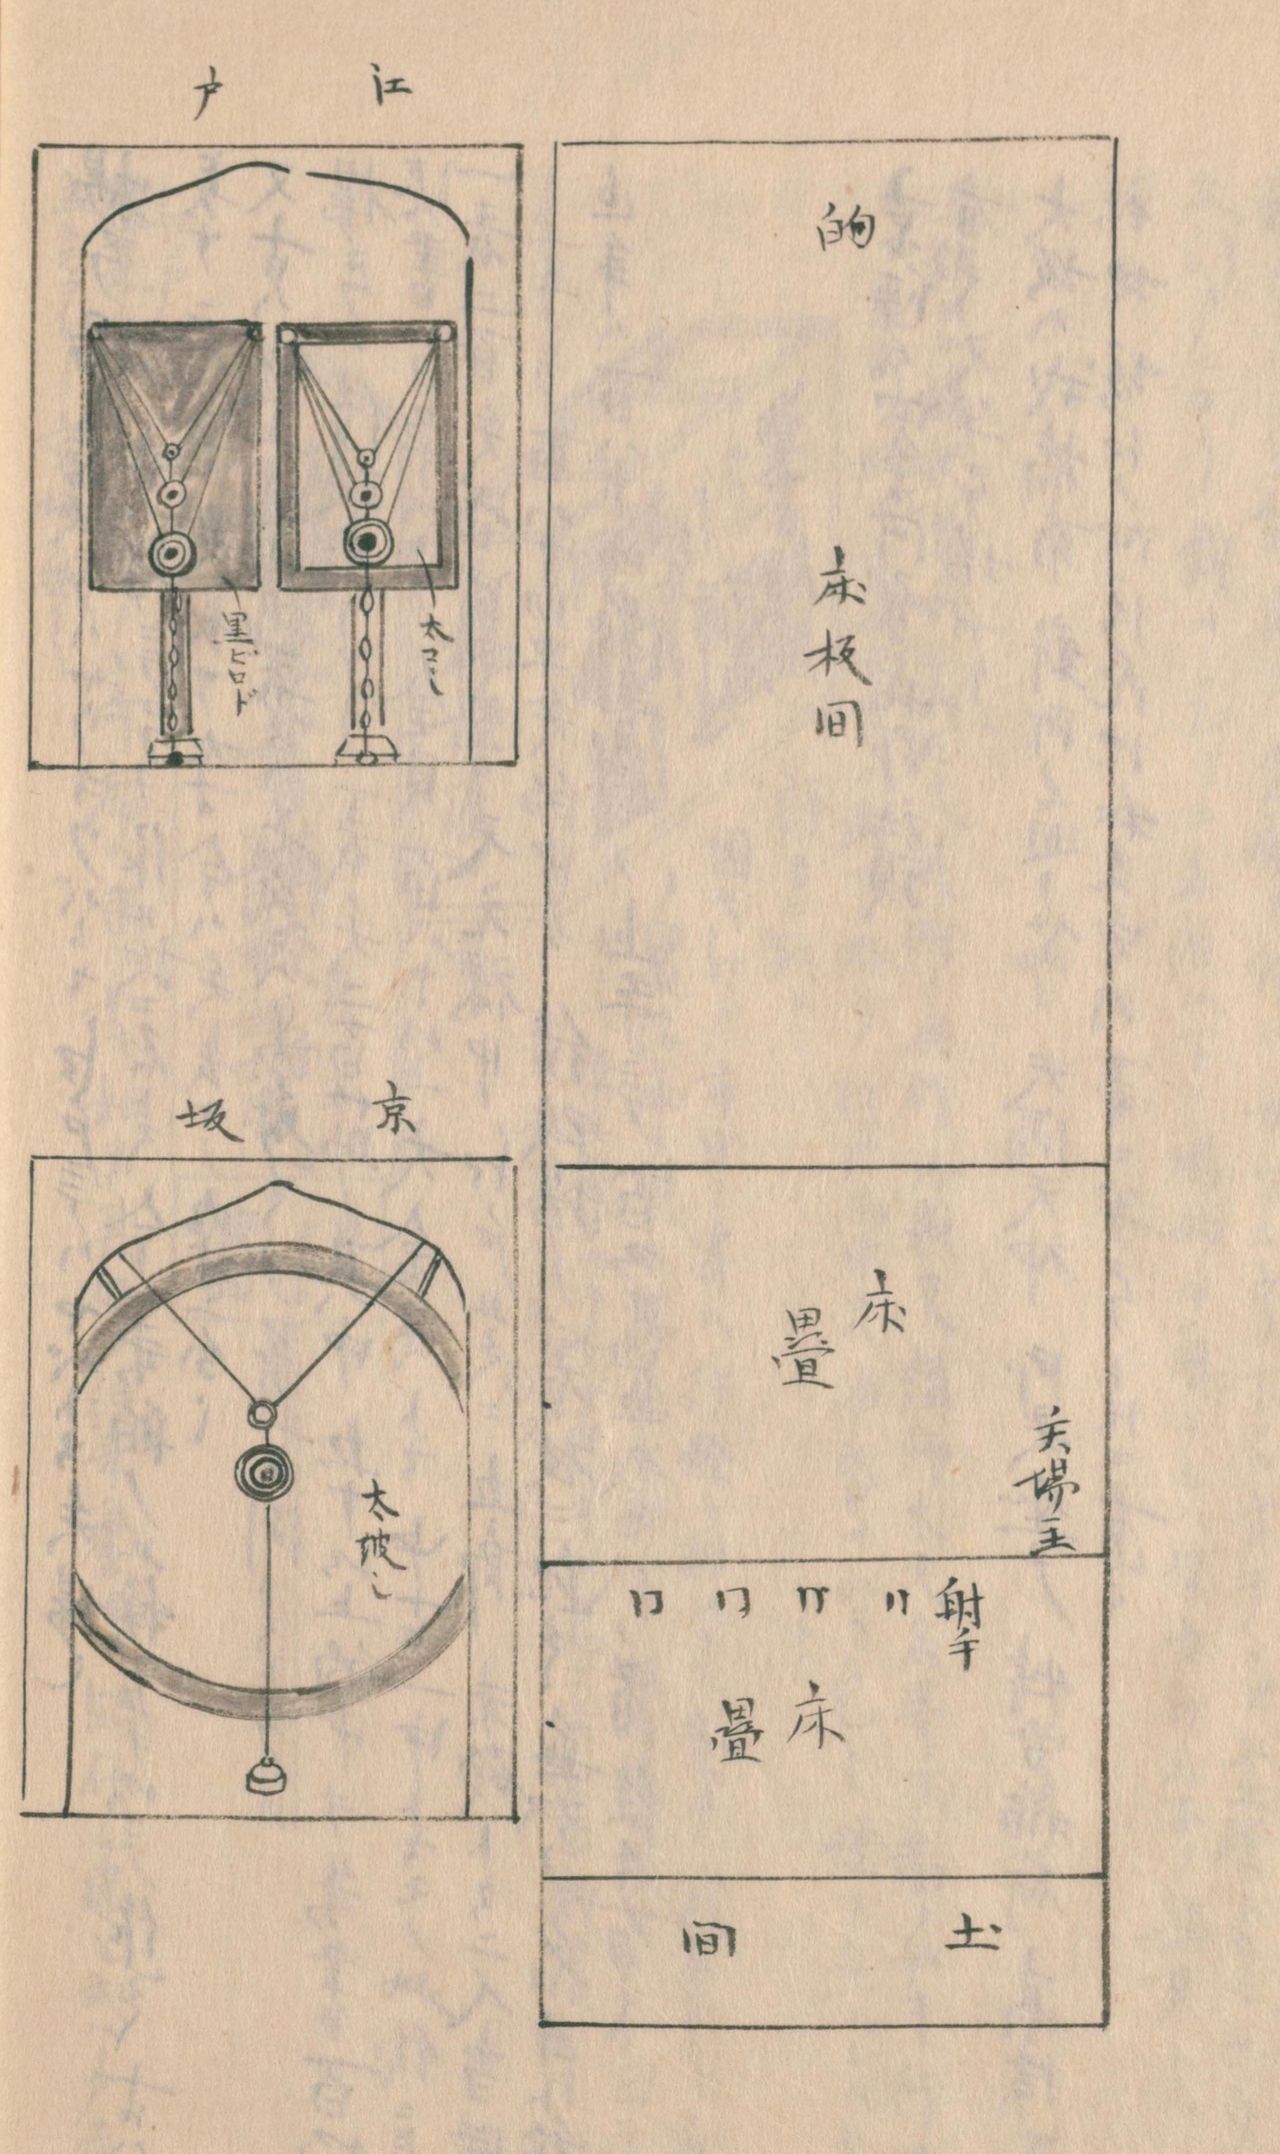 揚弓場格局圖（右）和箭靶圖（左）。箭靶，上面是江戶的，四方形的板子，有大中小三種；下面是京阪的箭靶，只有一個靶。射中之後，下面掛著的鈴鐺就會叮噹作響